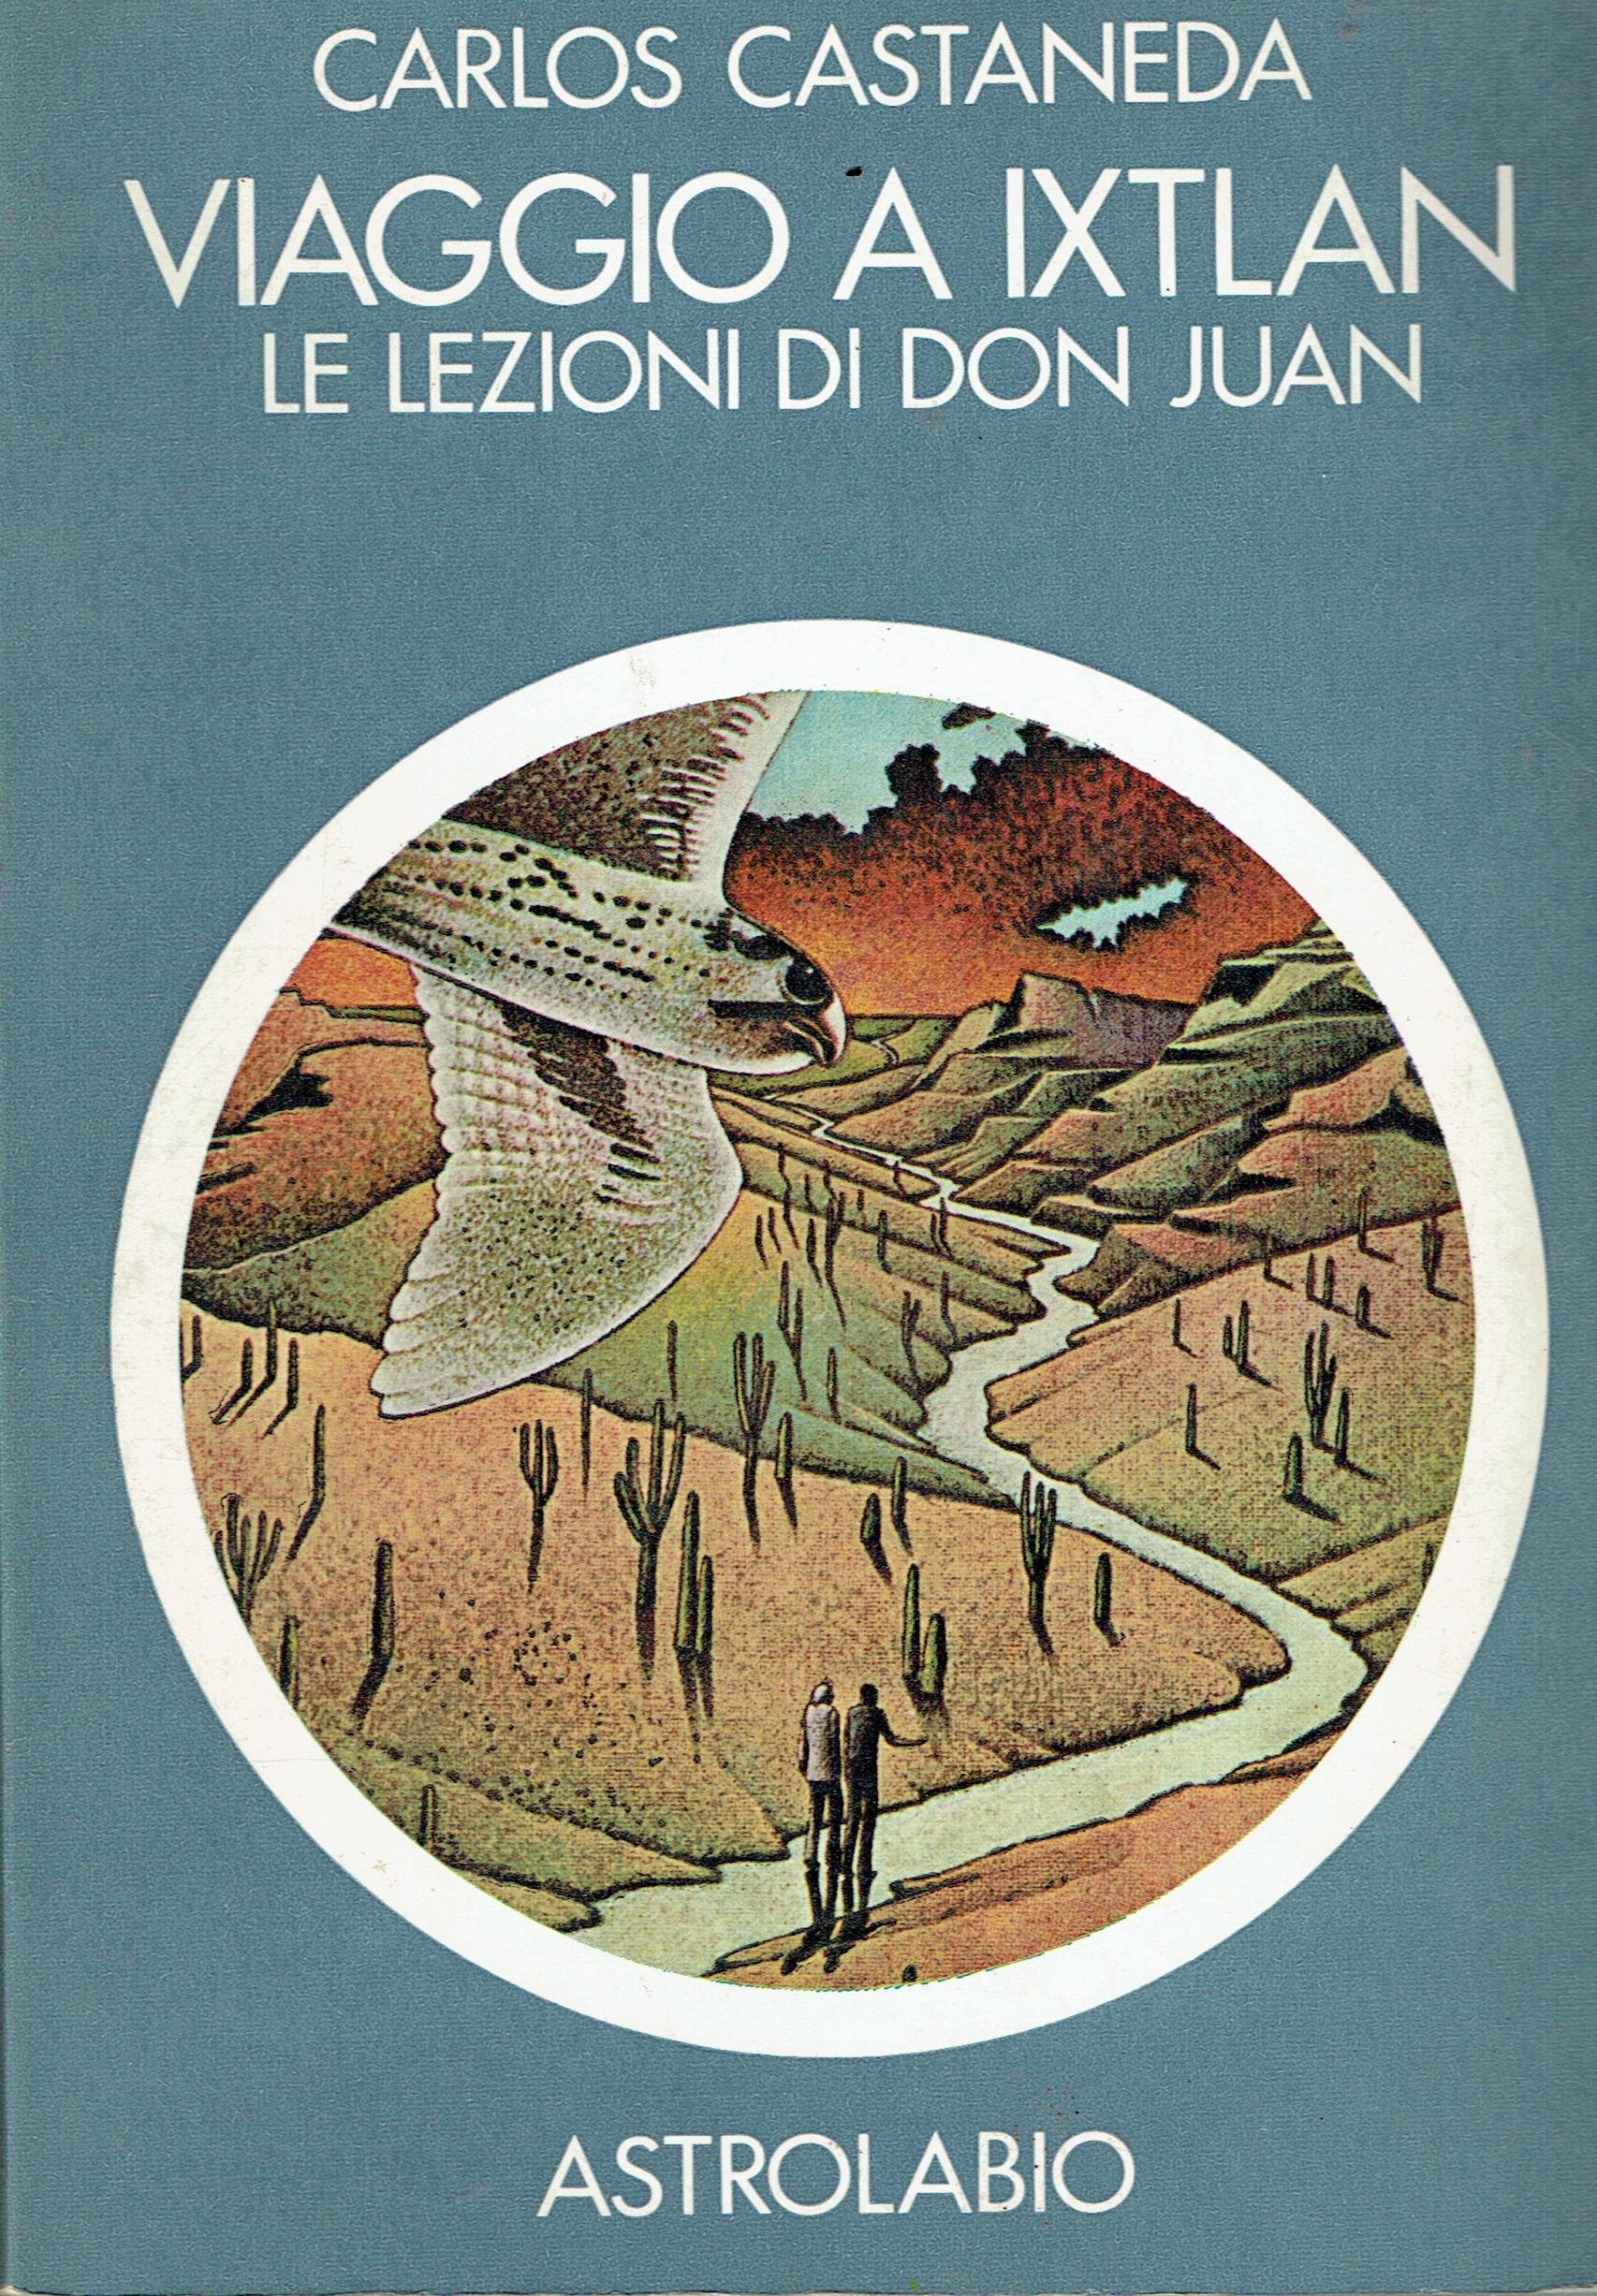 Carlos Castaneda: Viaggio a Ixtlan (Paperback, Italiano language, 2009, Astrolabio Ubaldini)